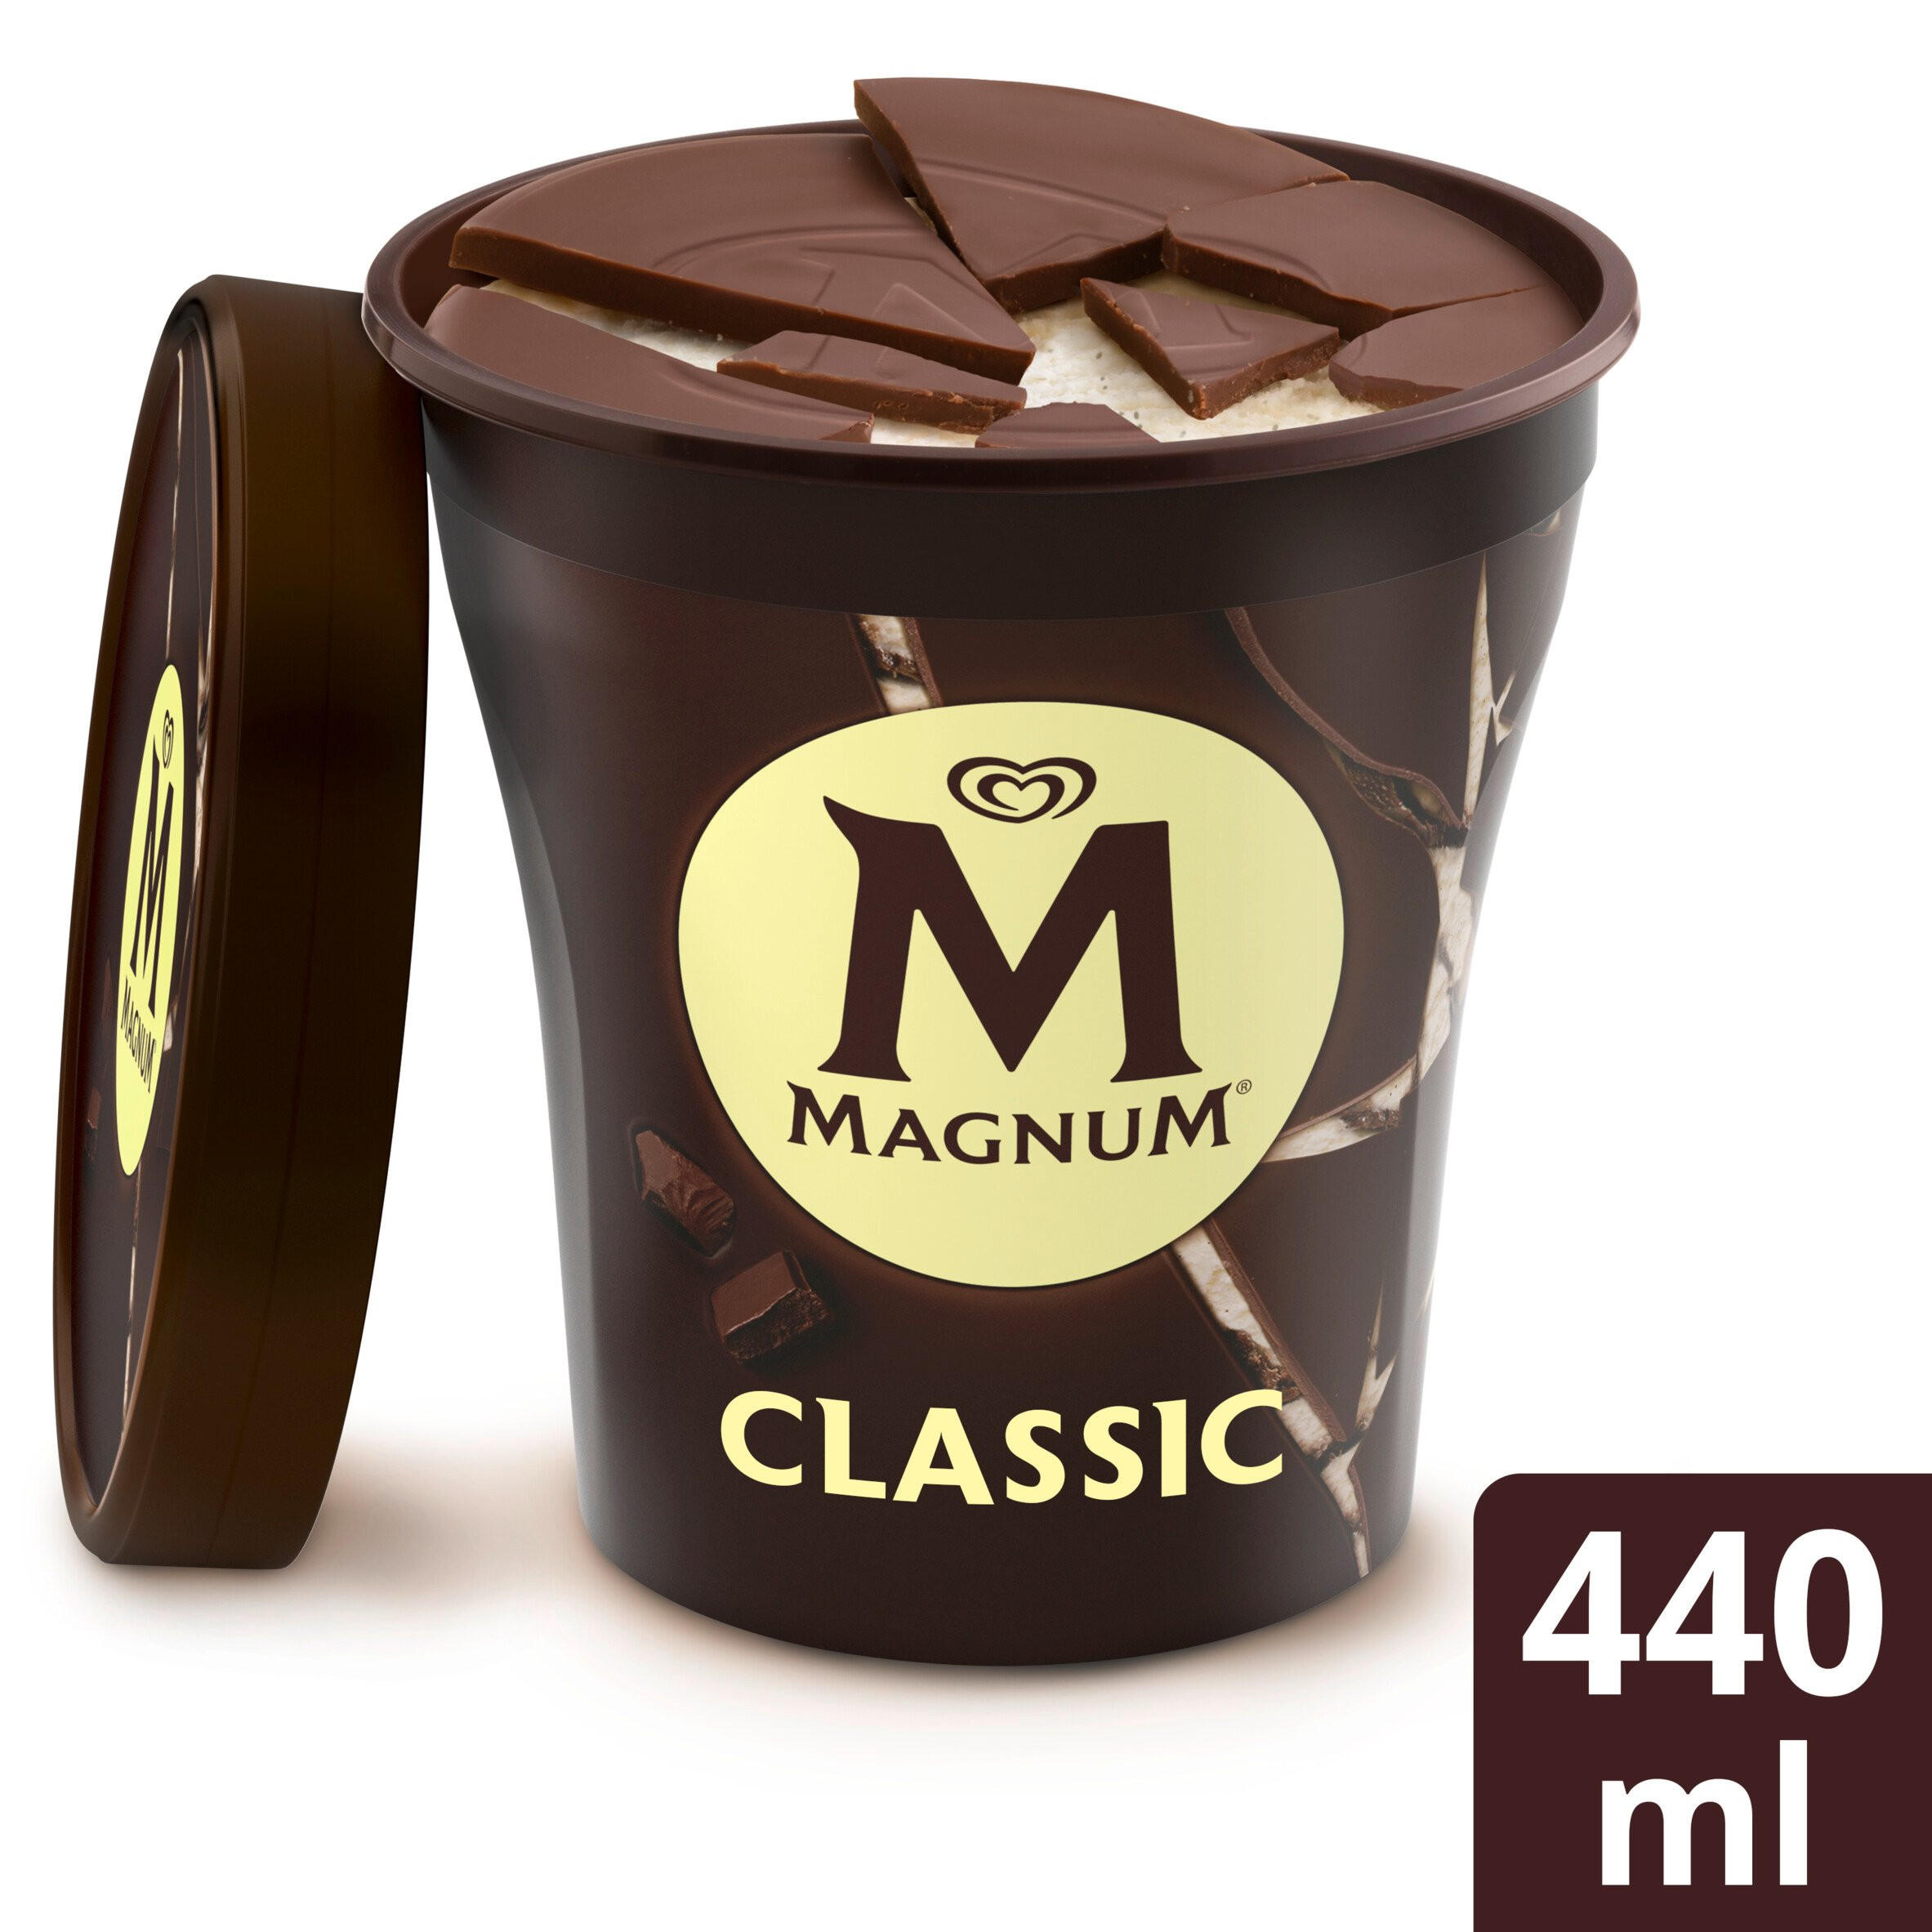 Magnum Classic Ice Cream 440ml Ice Cream Tubs Iceland Foods